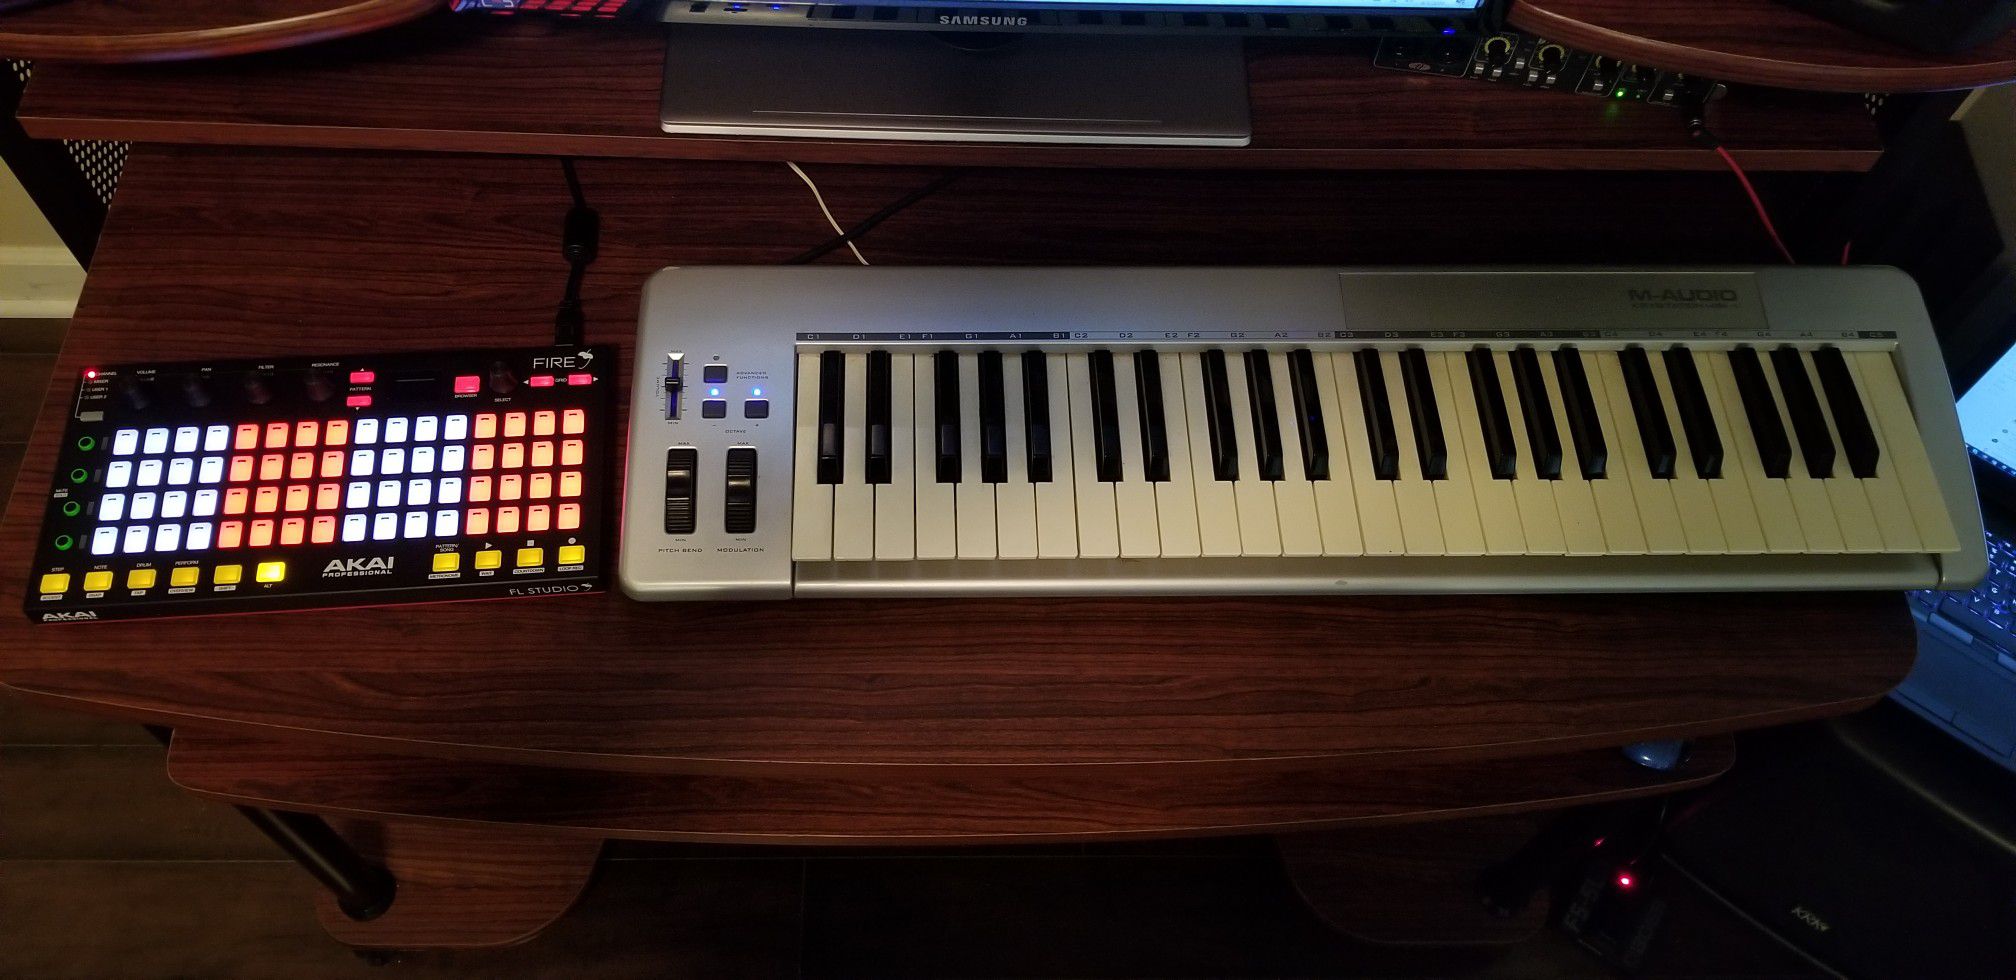 Midi keyboard and controller